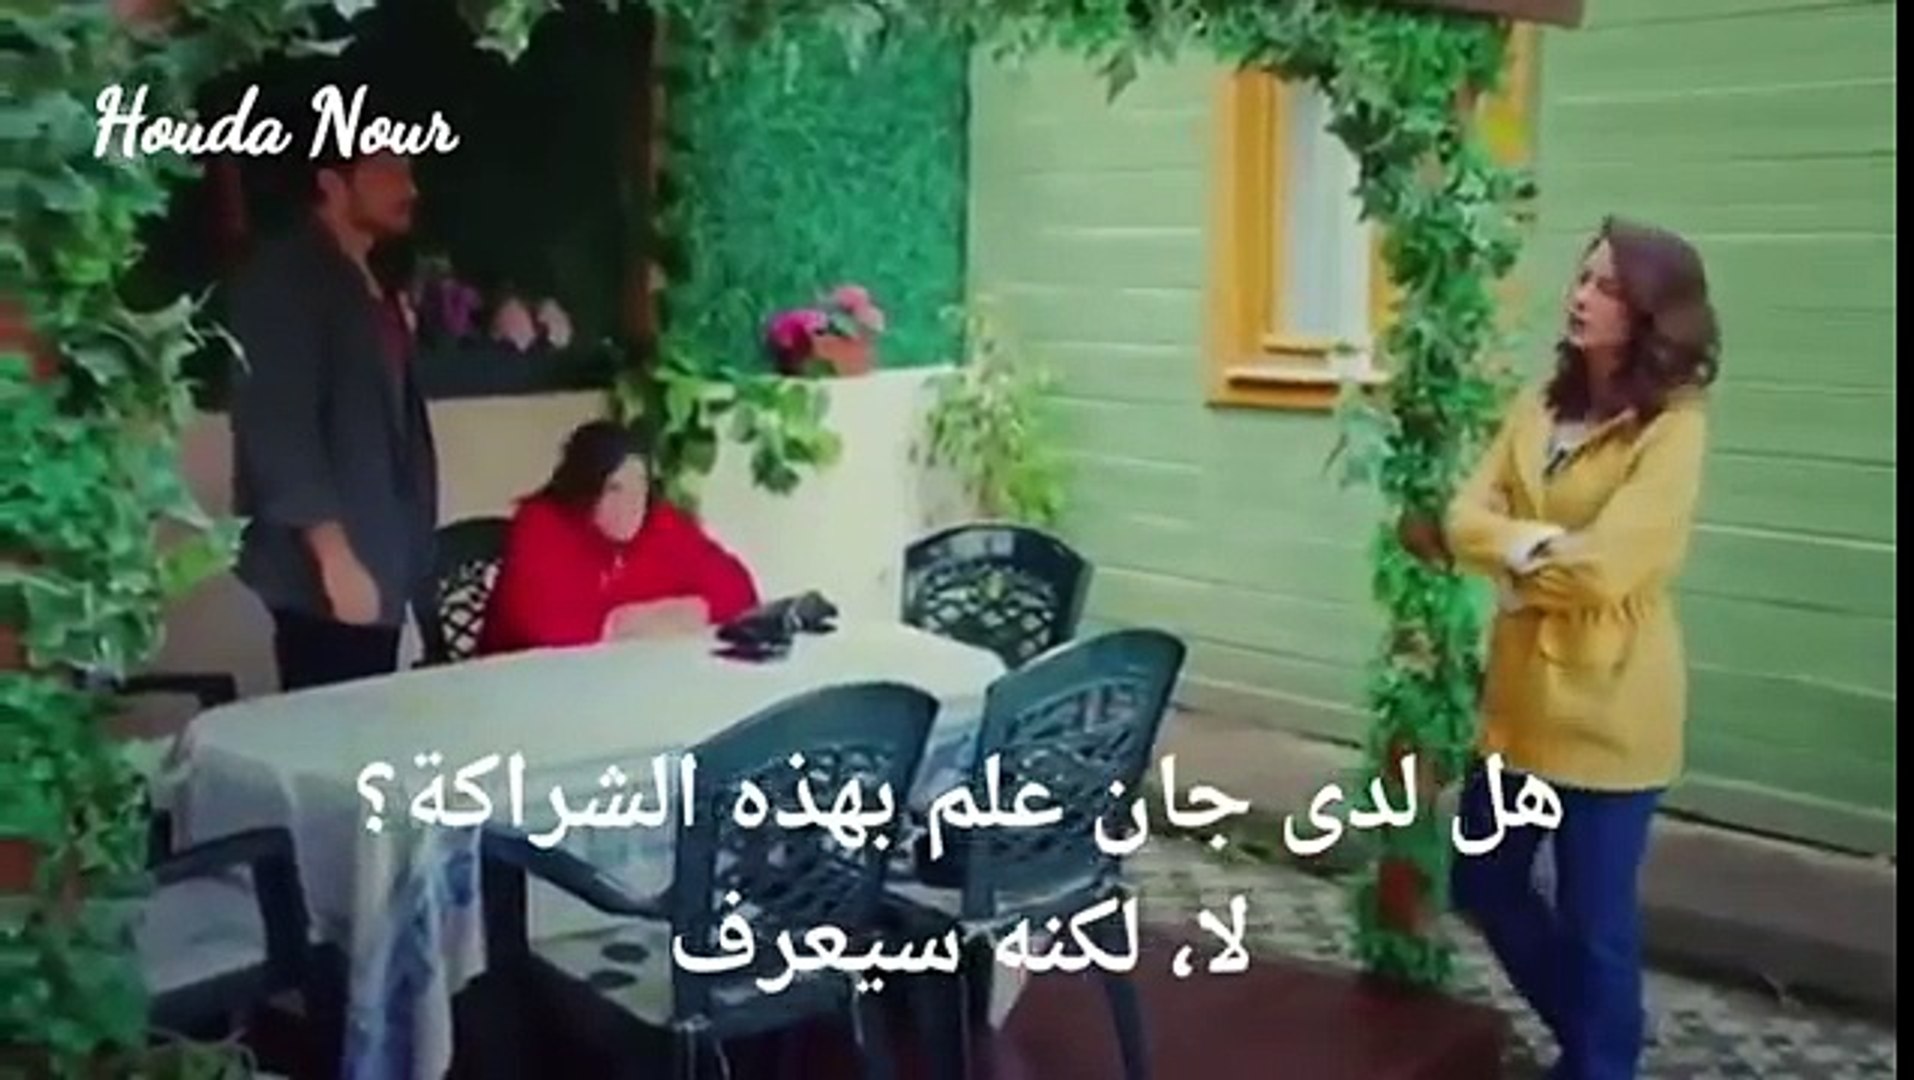 الطائر المبكر الحلقة 17 الإعلان الأول مترجم للعربية فيديو Dailymotion